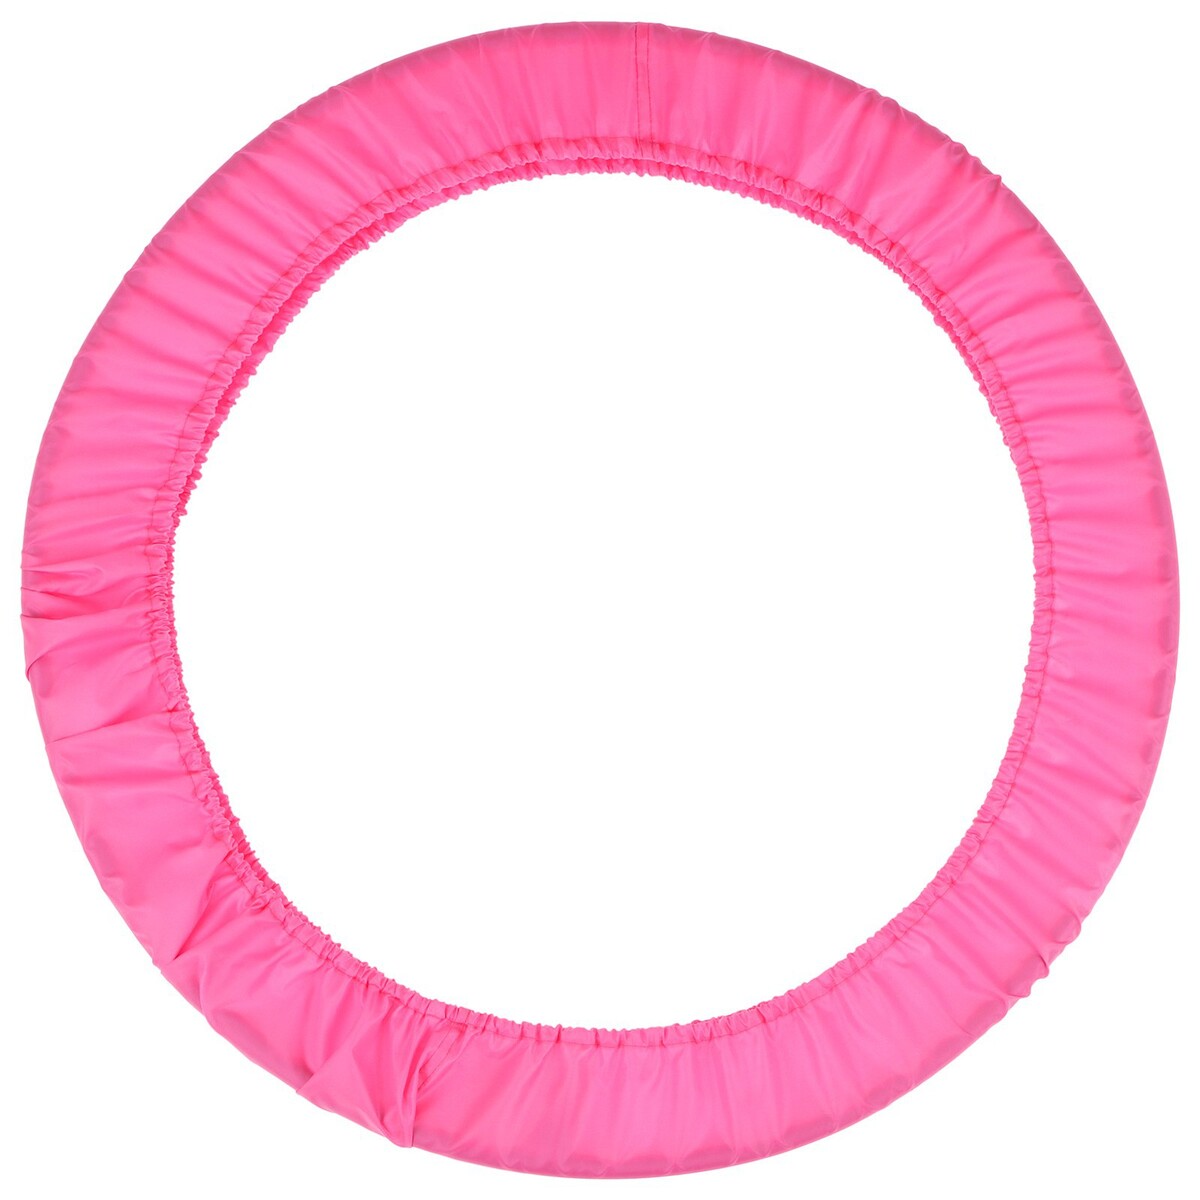 Чехол для обруча grace dance, d=60 см, цвет розовый чехол на подушку с кисточками этель розовый 45х45 см 100% п э велюр